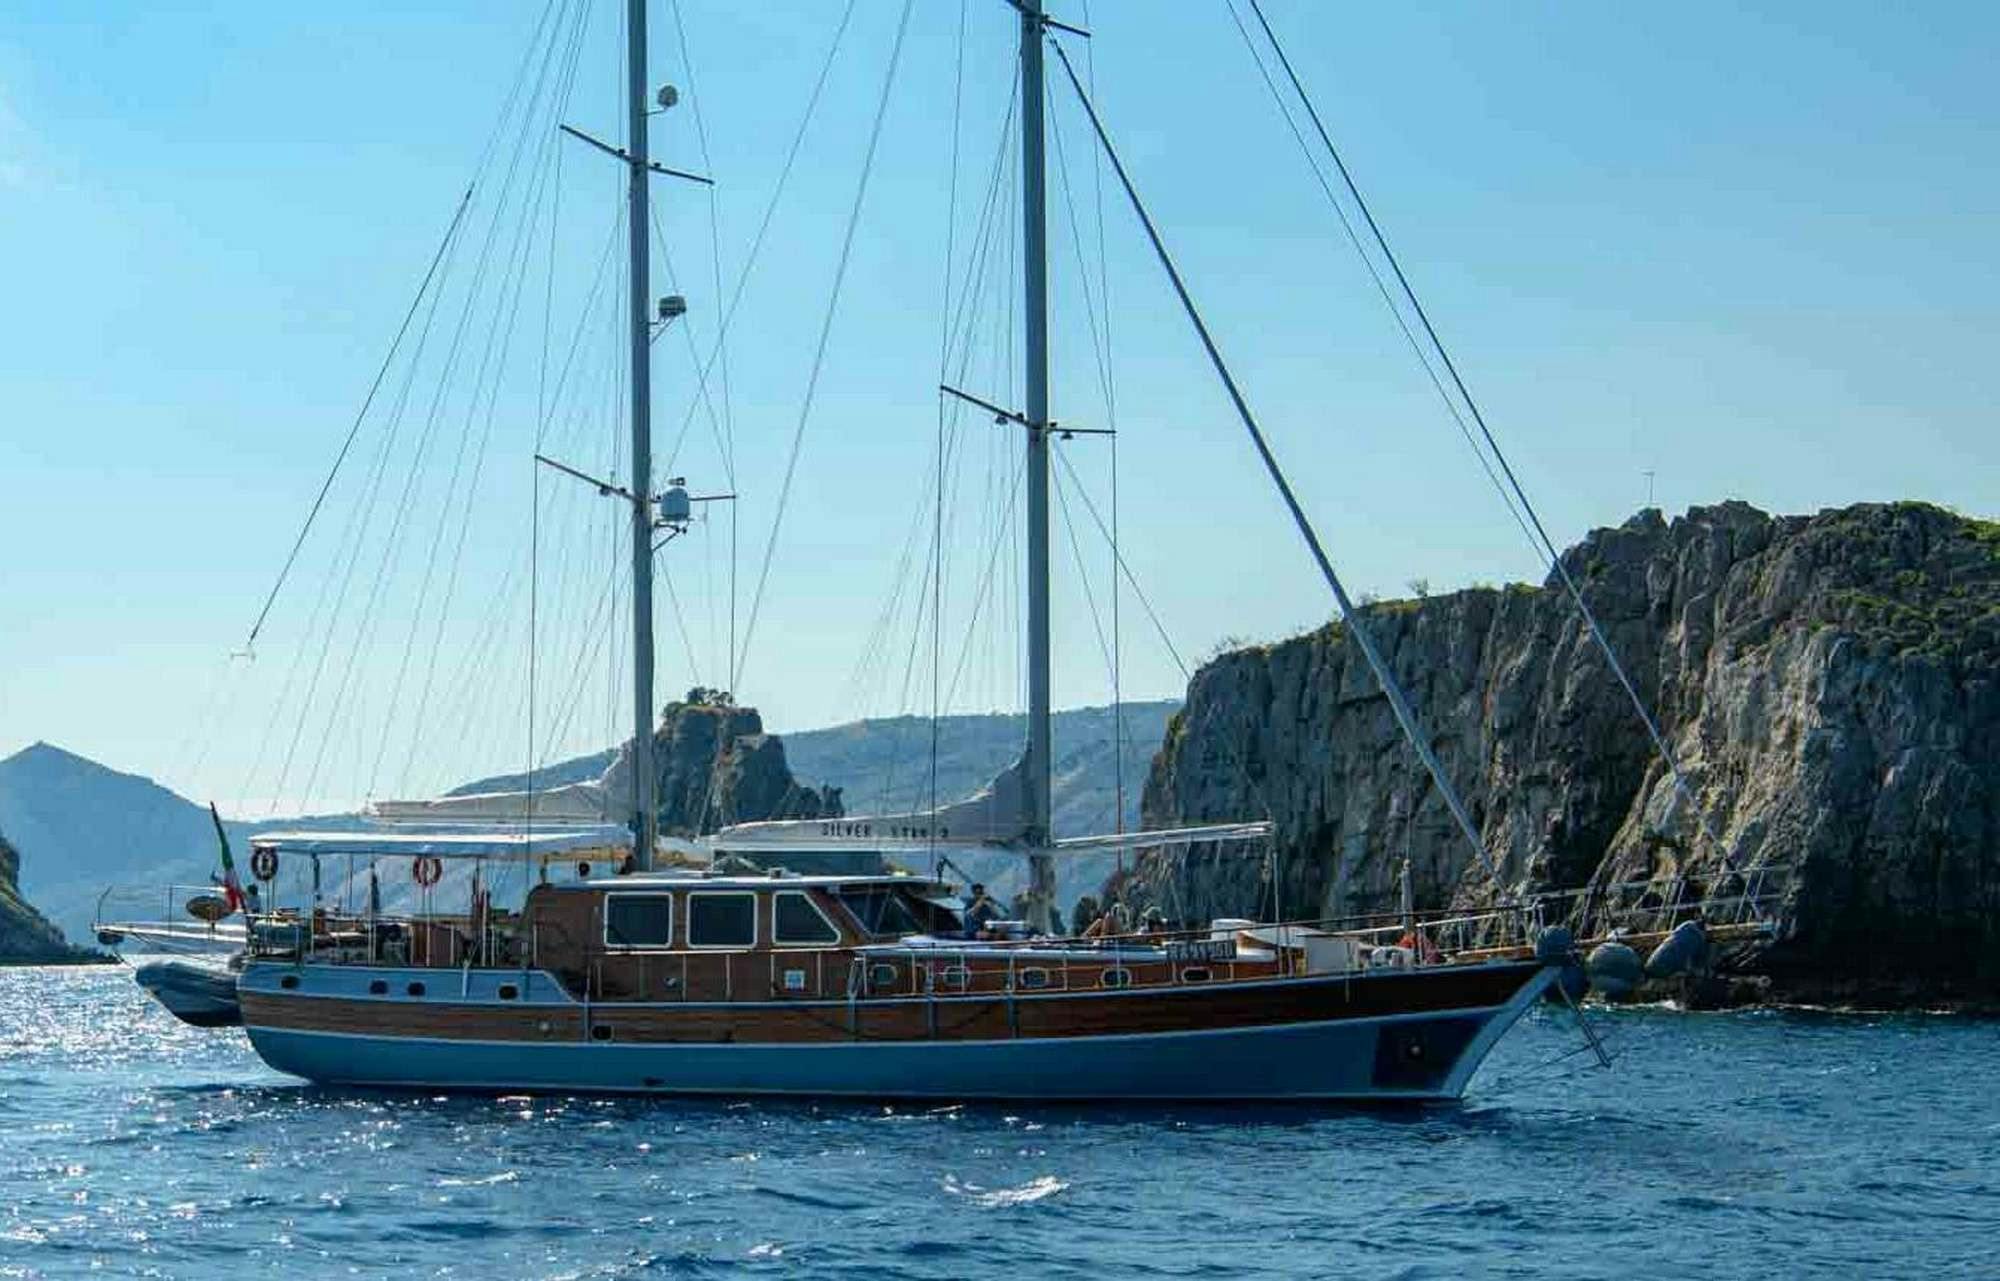 SILVER STAR 2 - Yacht Charter Genoa & Boat hire in Fr. Riviera & Tyrrhenian Sea 1